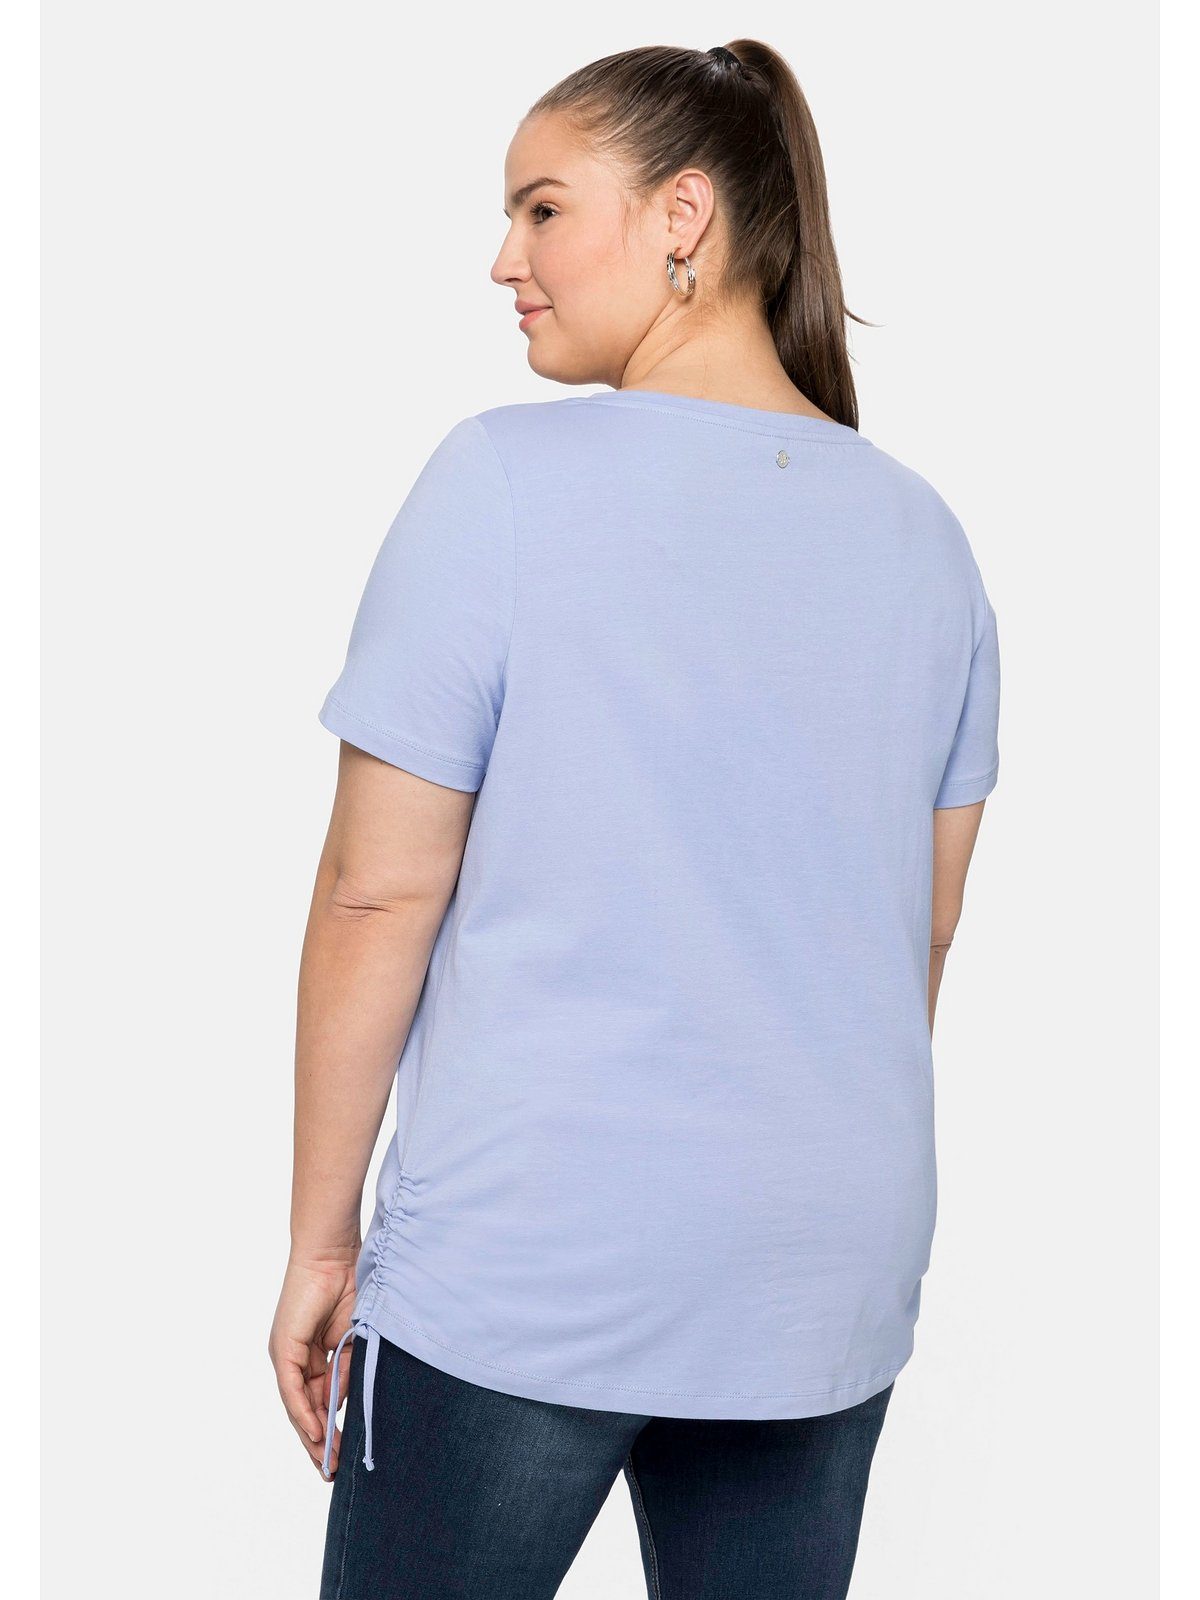 Sheego T-Shirt Große Größen mit Bindeband seitlicher mittelblau und Raffung